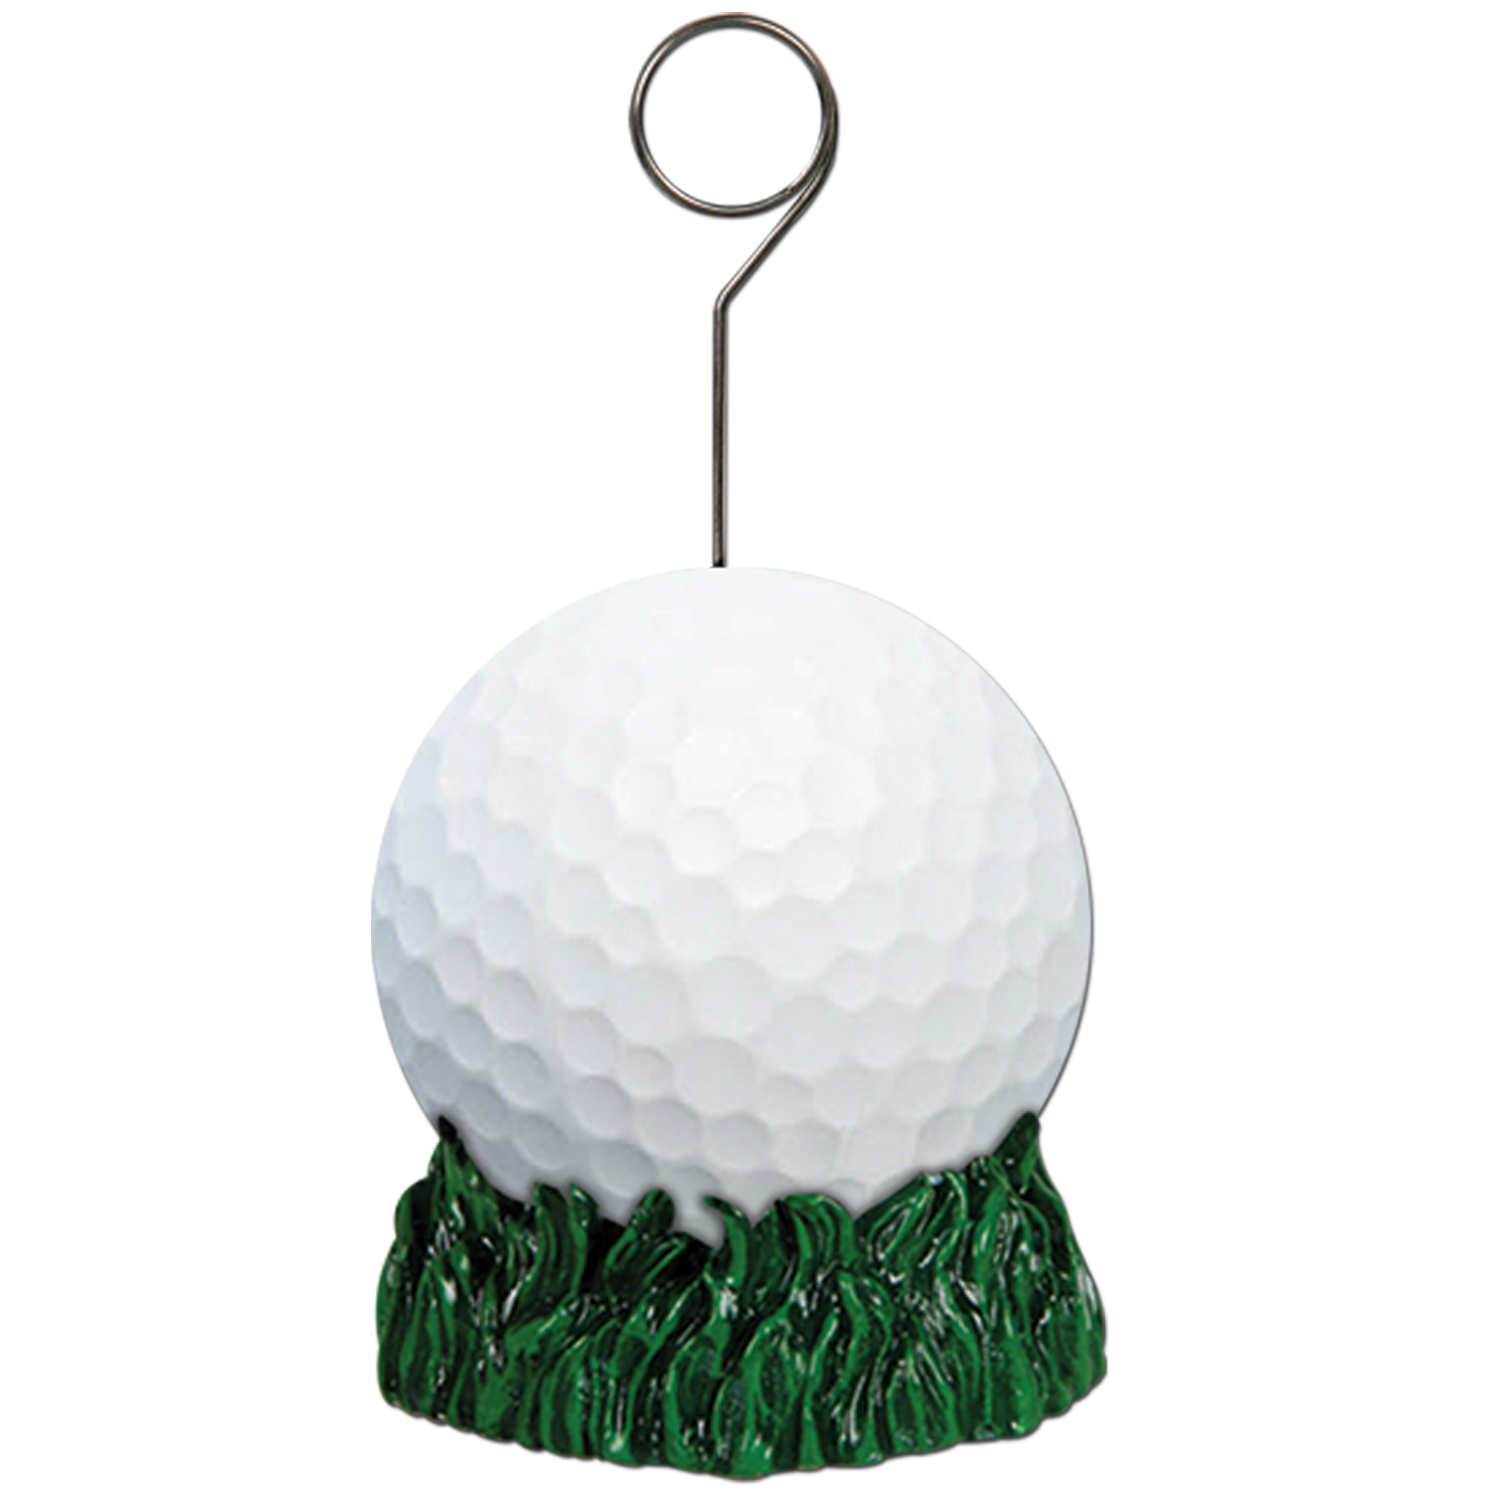 6 Wholesale Golf Ball Photo/balloon Holder